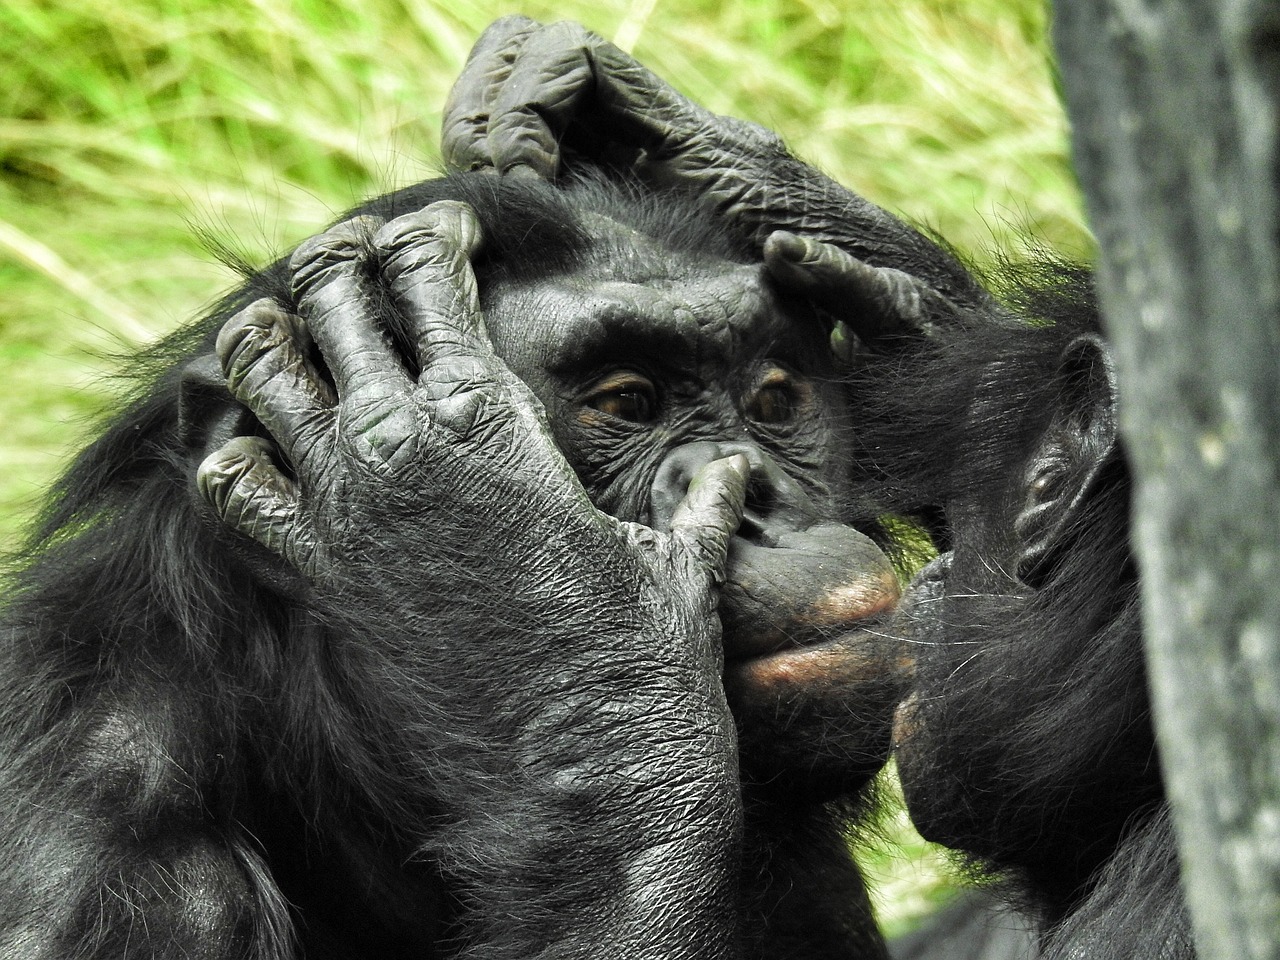 Система невербального общения общая как у человека, так и у прочих приматов